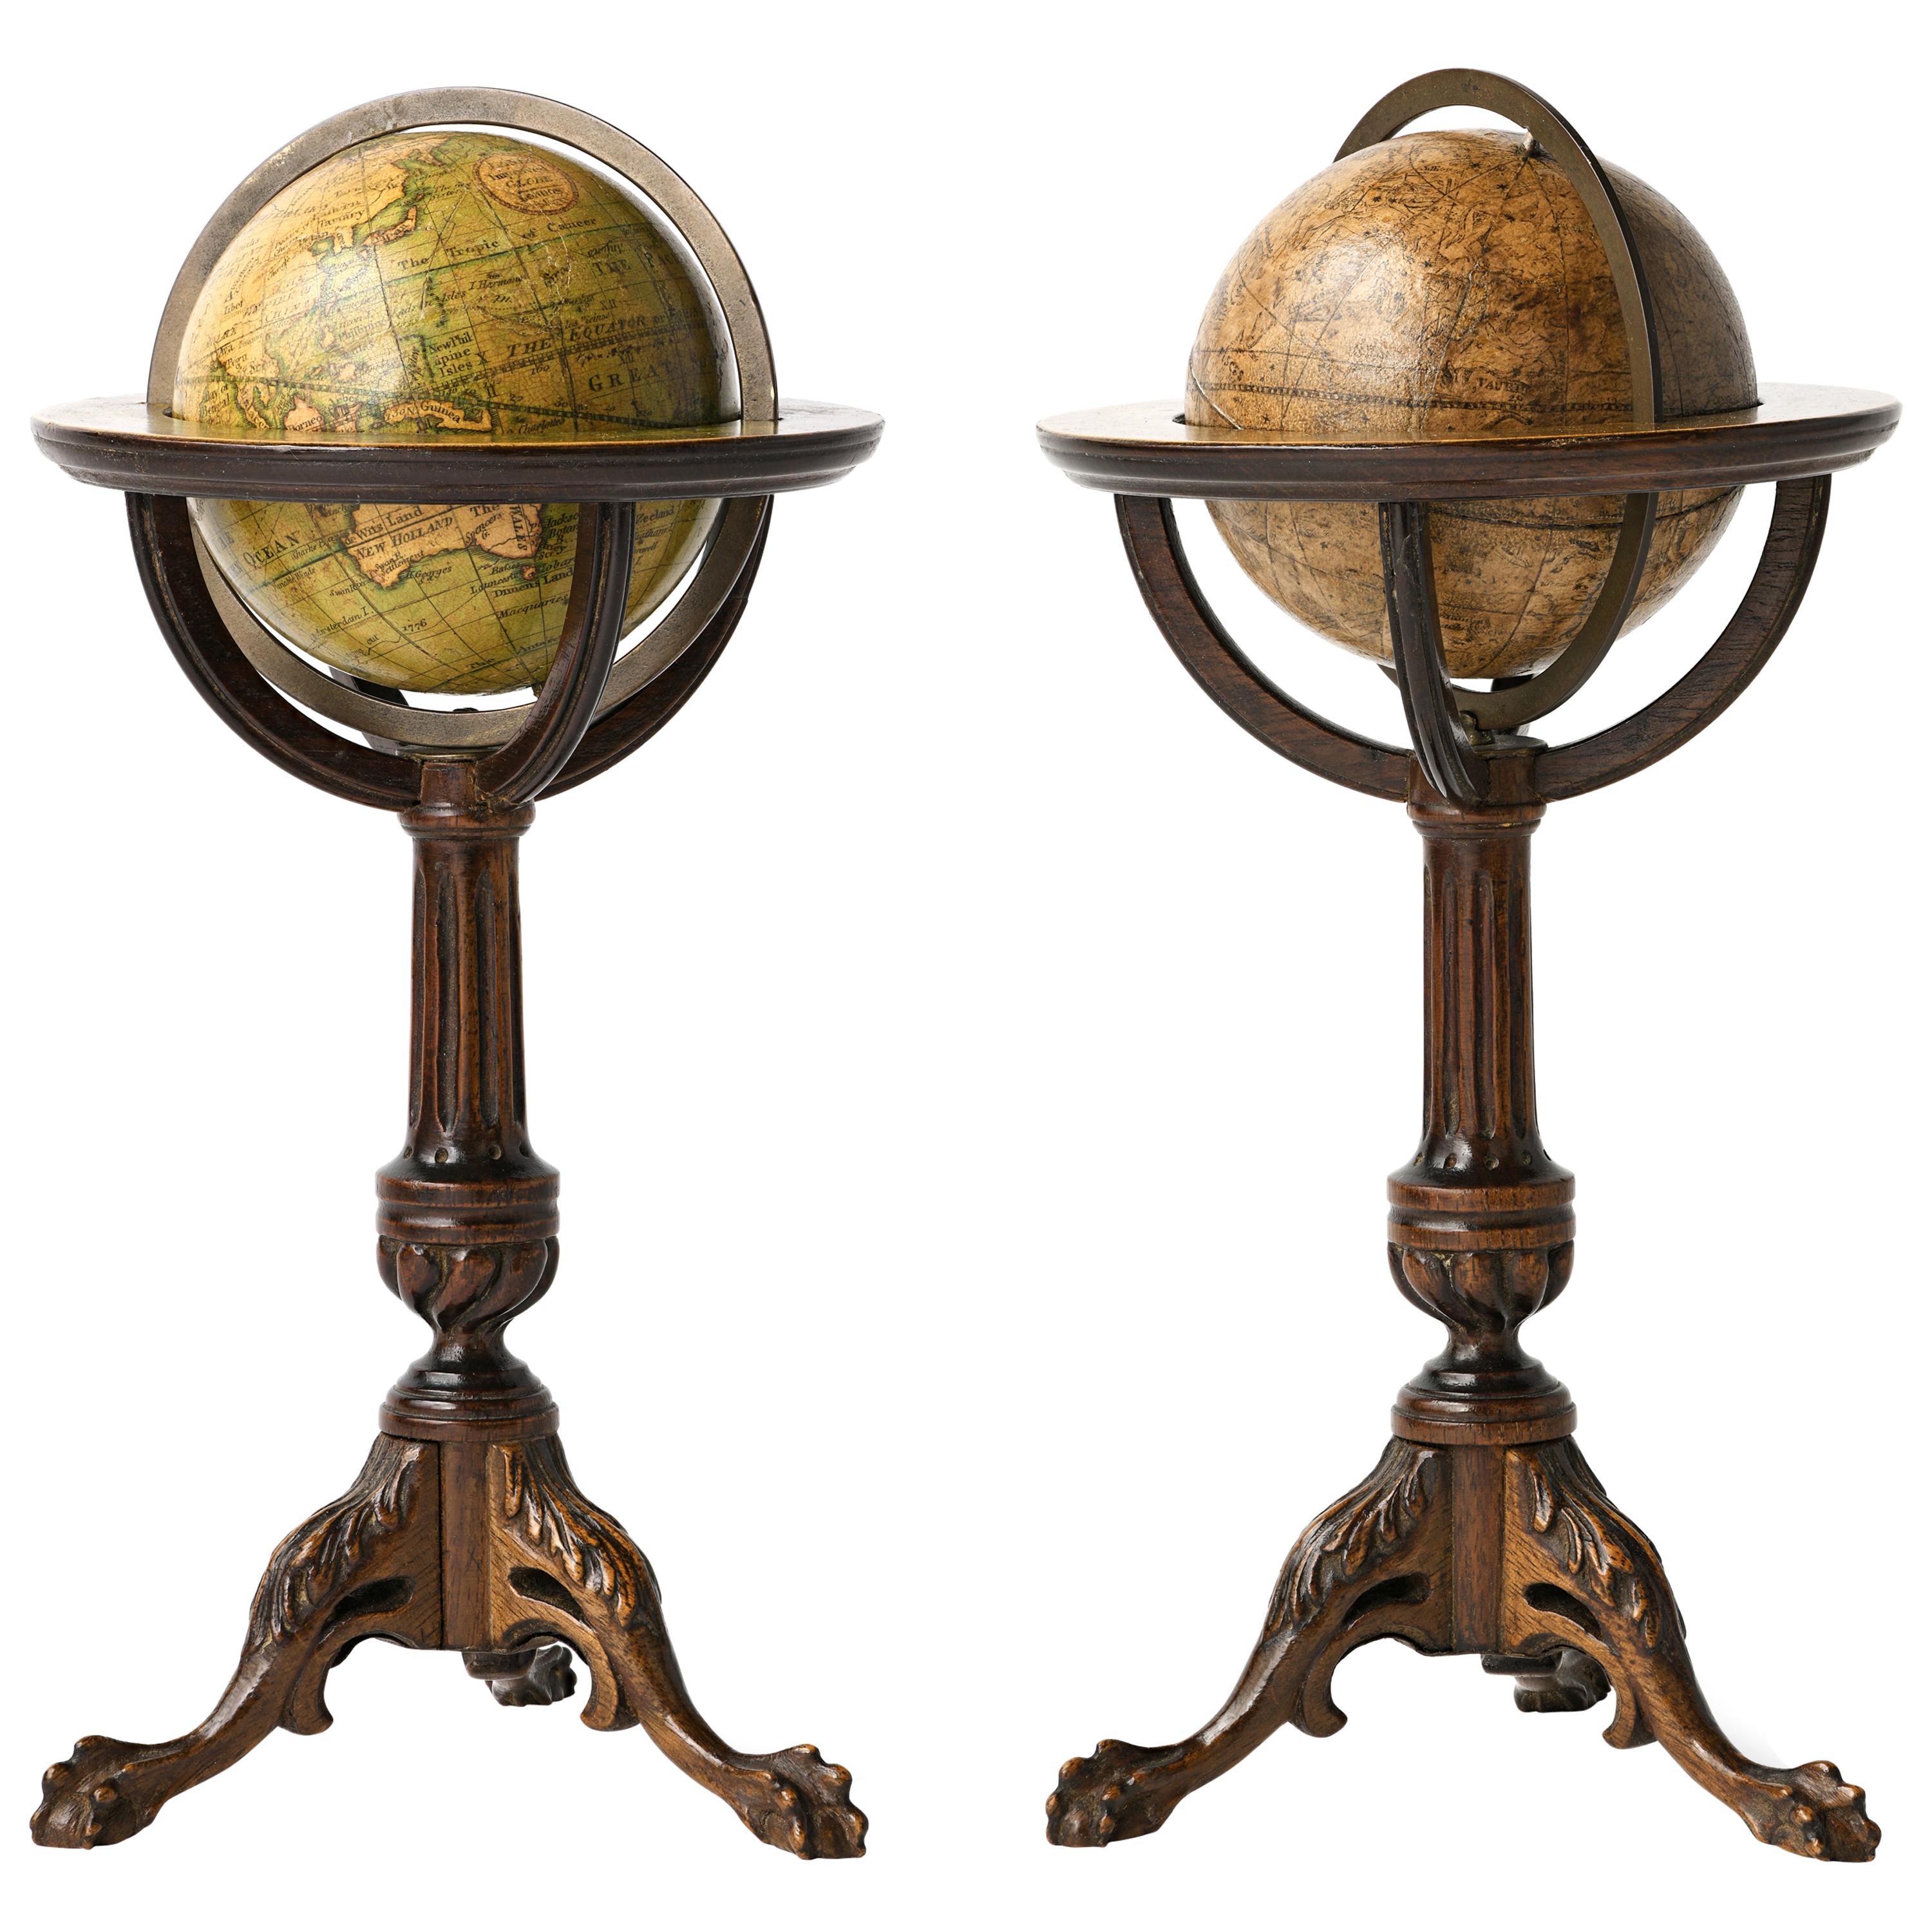 Paar Miniature Globes Lane's auf Dreibeinbasis, London nach 1833, vor 1858